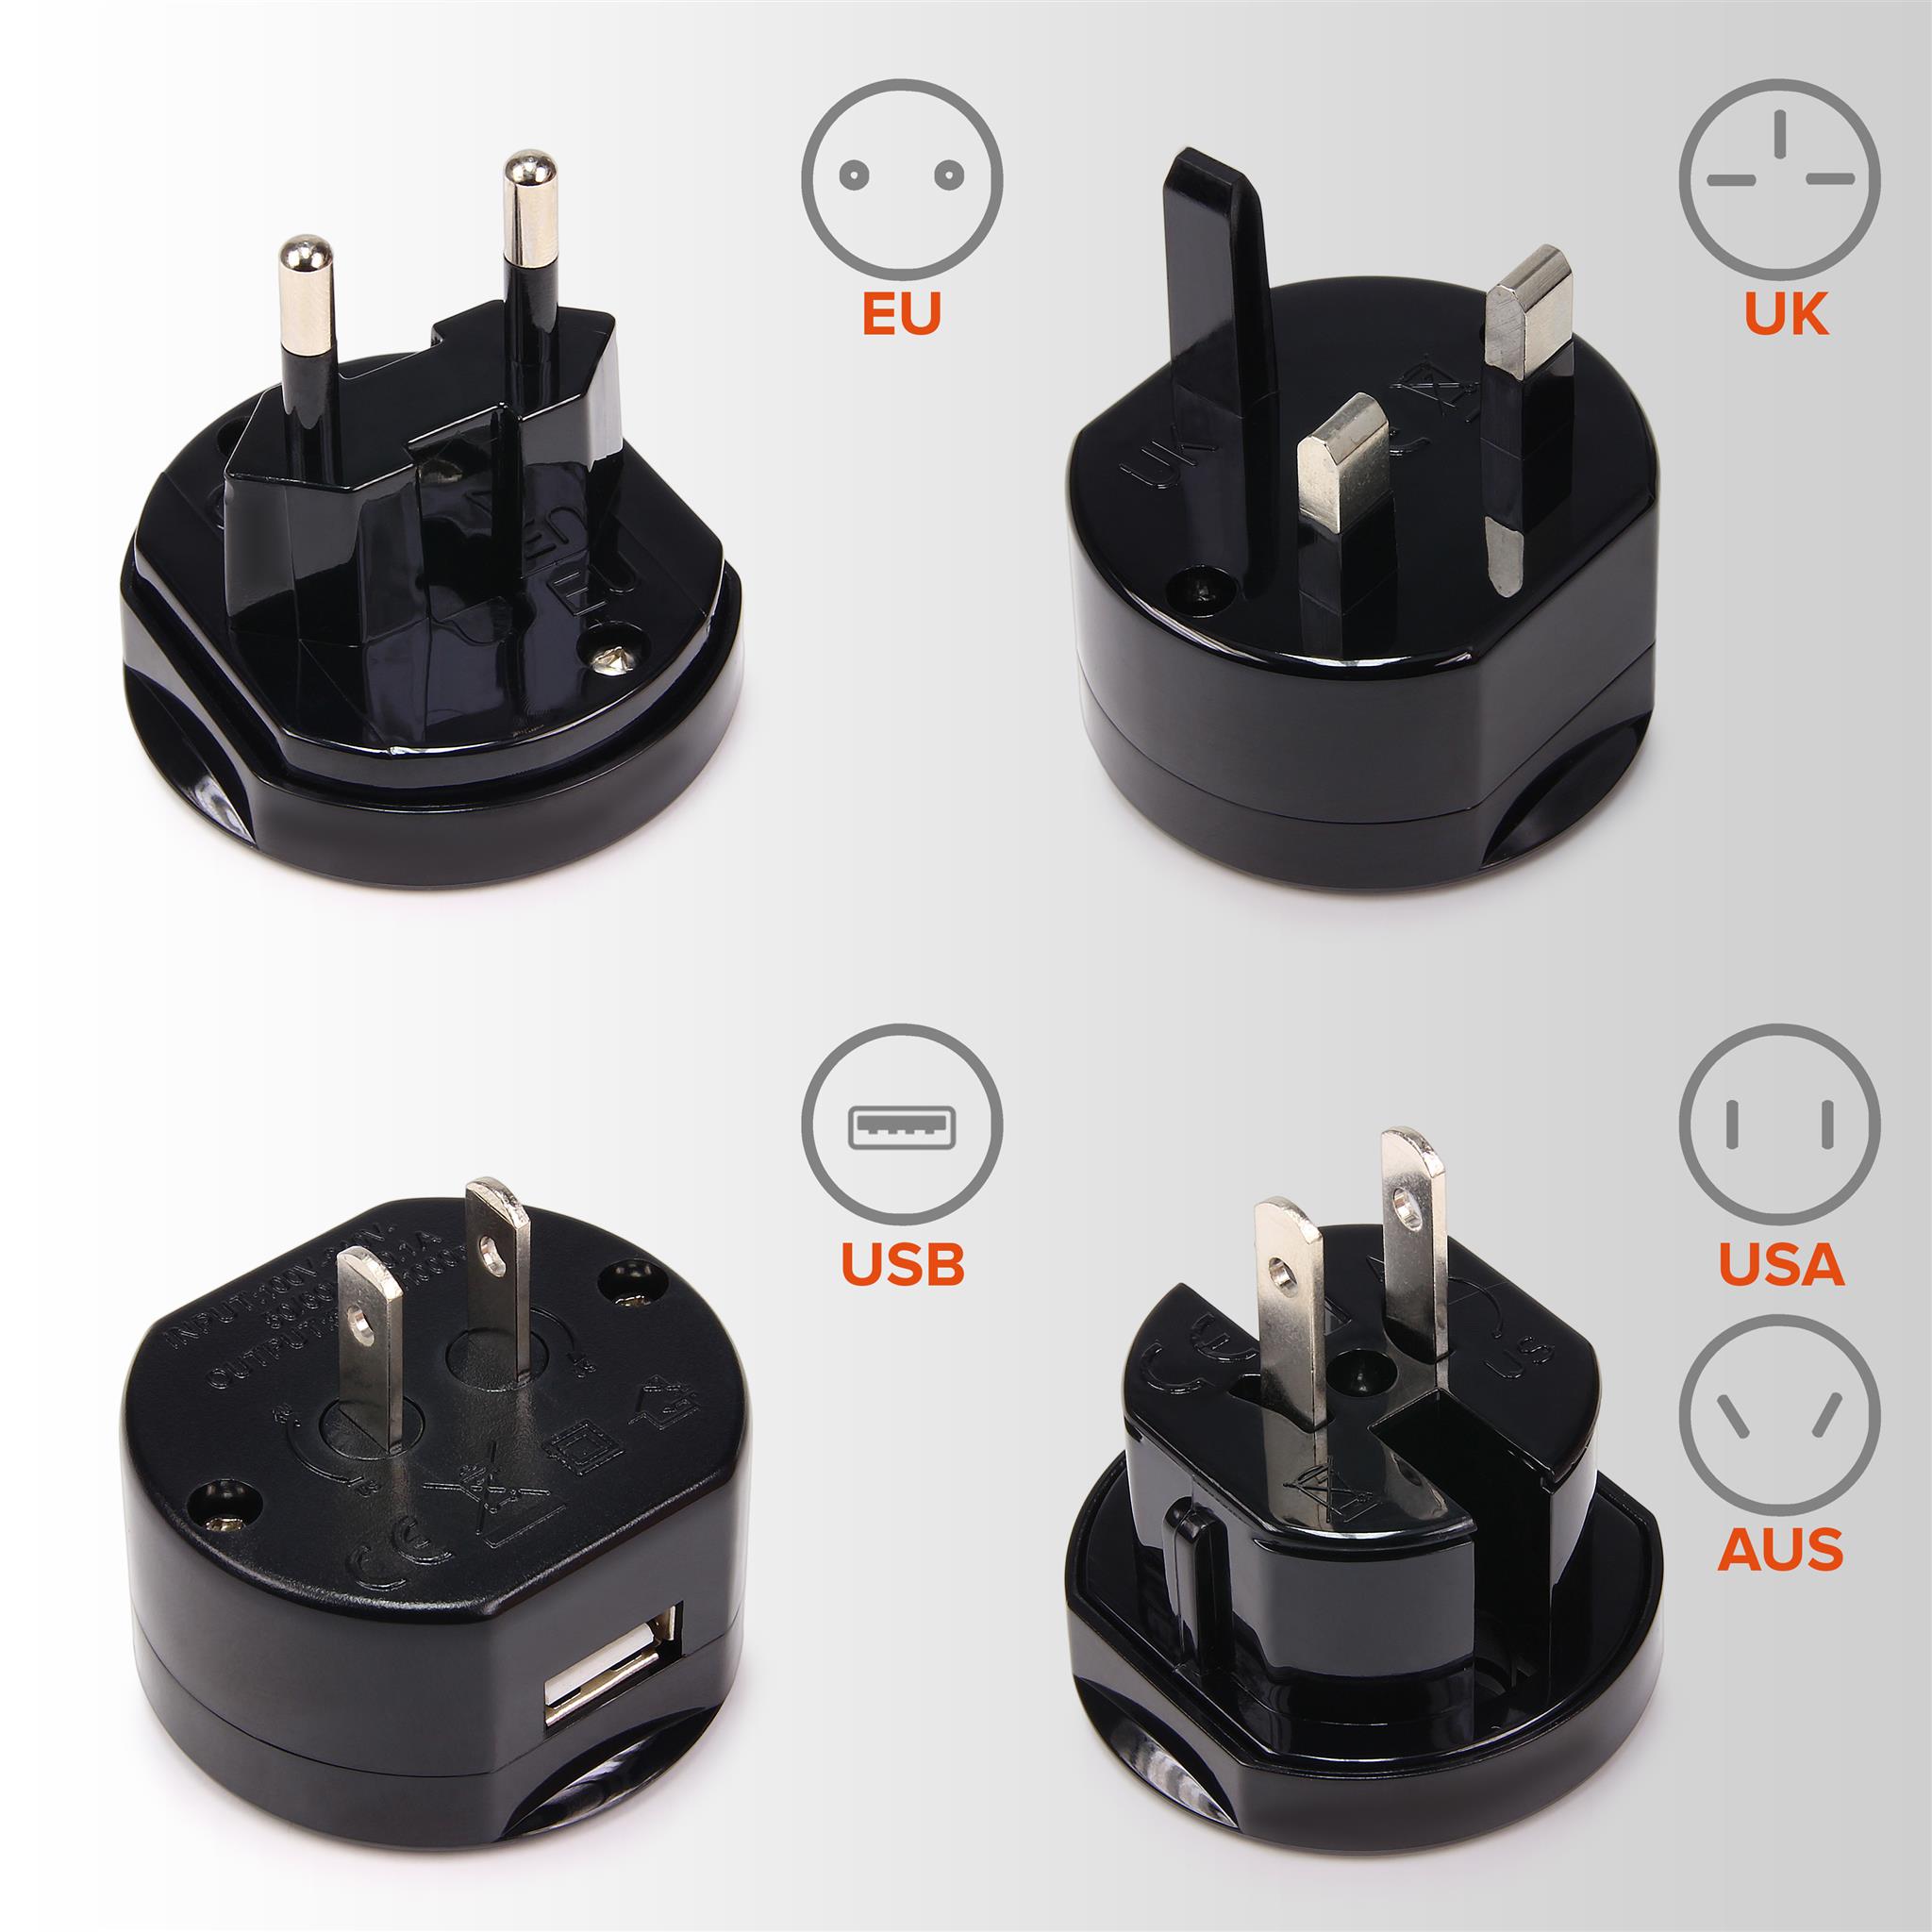 Universal USB reiseadapter mit 2 USB-Ports aus 150 Ländern weltweit US UK EU AU Universal fusionierten Sicherheit AC-in Einem Ladegerät mit LED-Betriebsanzeige RedRiver Stromadapter Weiß 